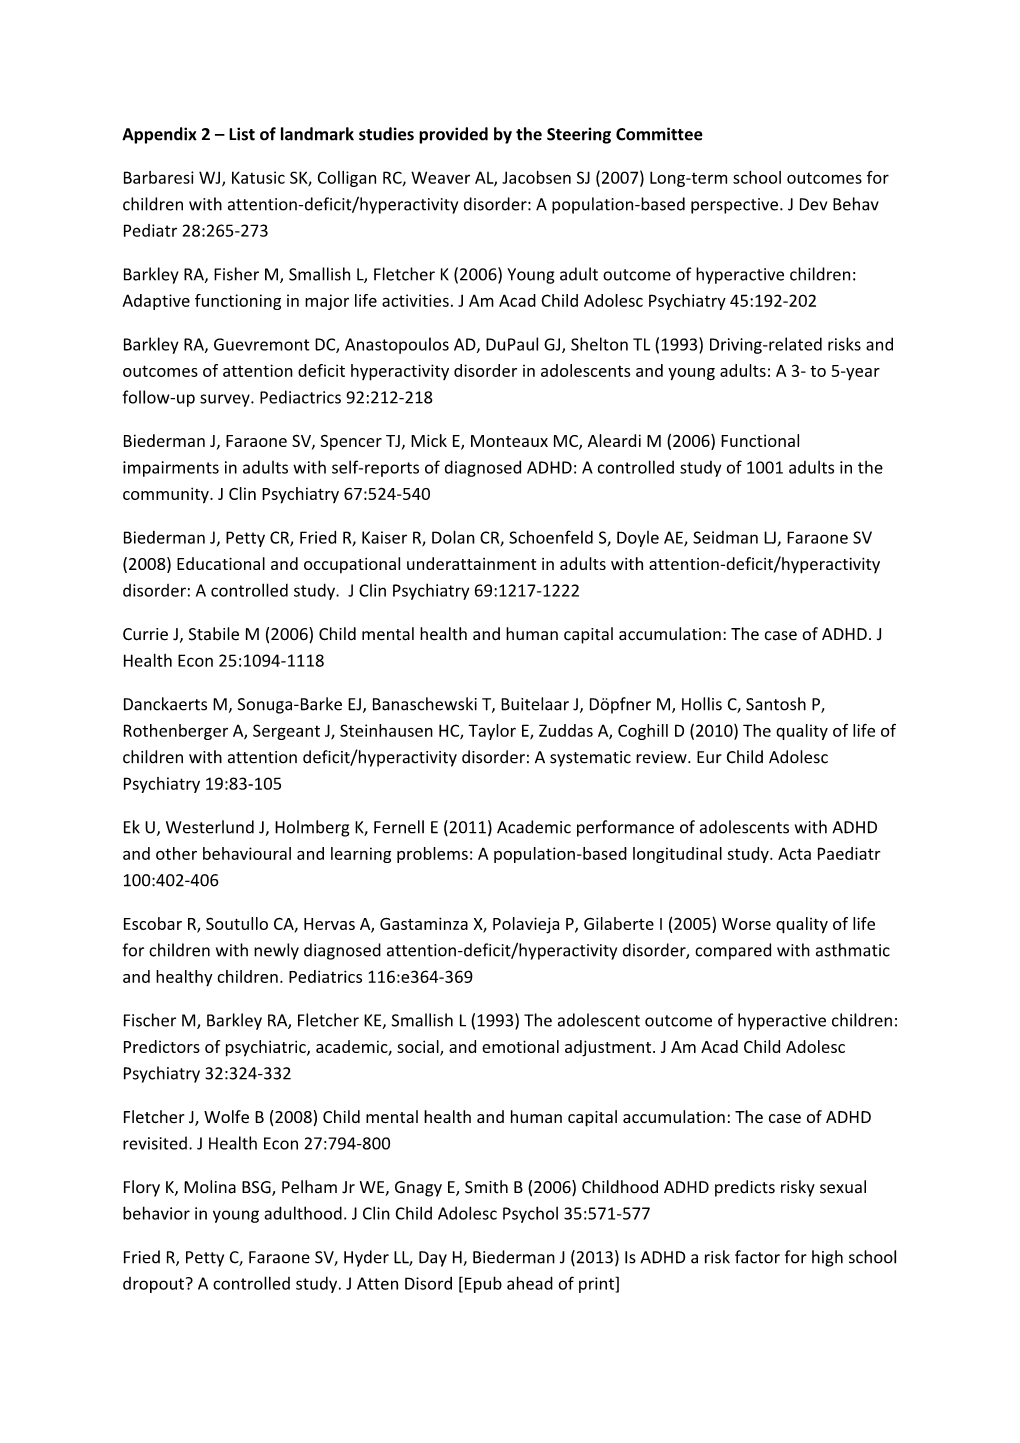 Appendix 2 List of Landmark Studies Provided by the Steering Committee